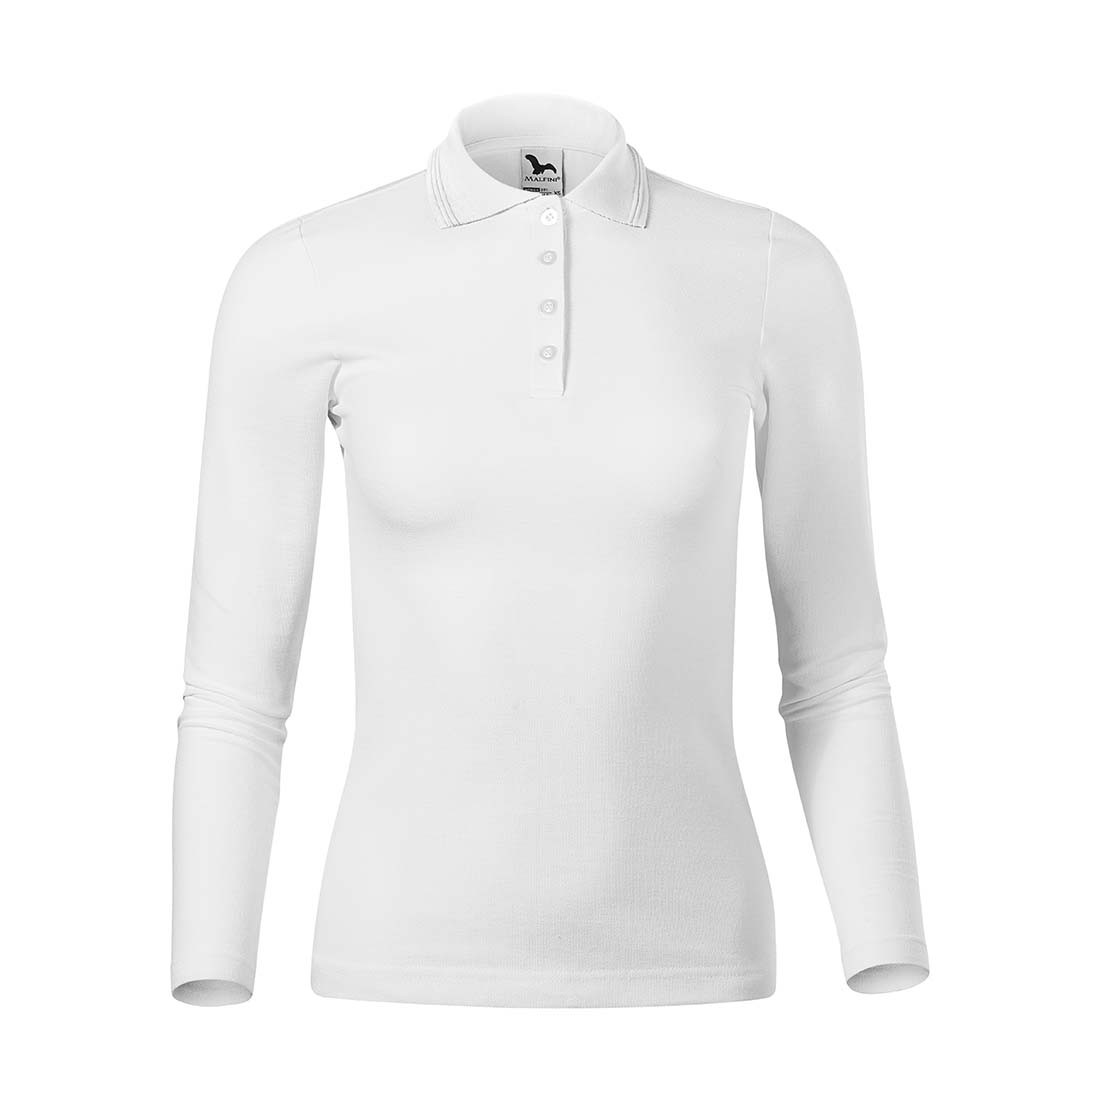 Women's Polo Shirt PIQUE POLO LS - Safetywear